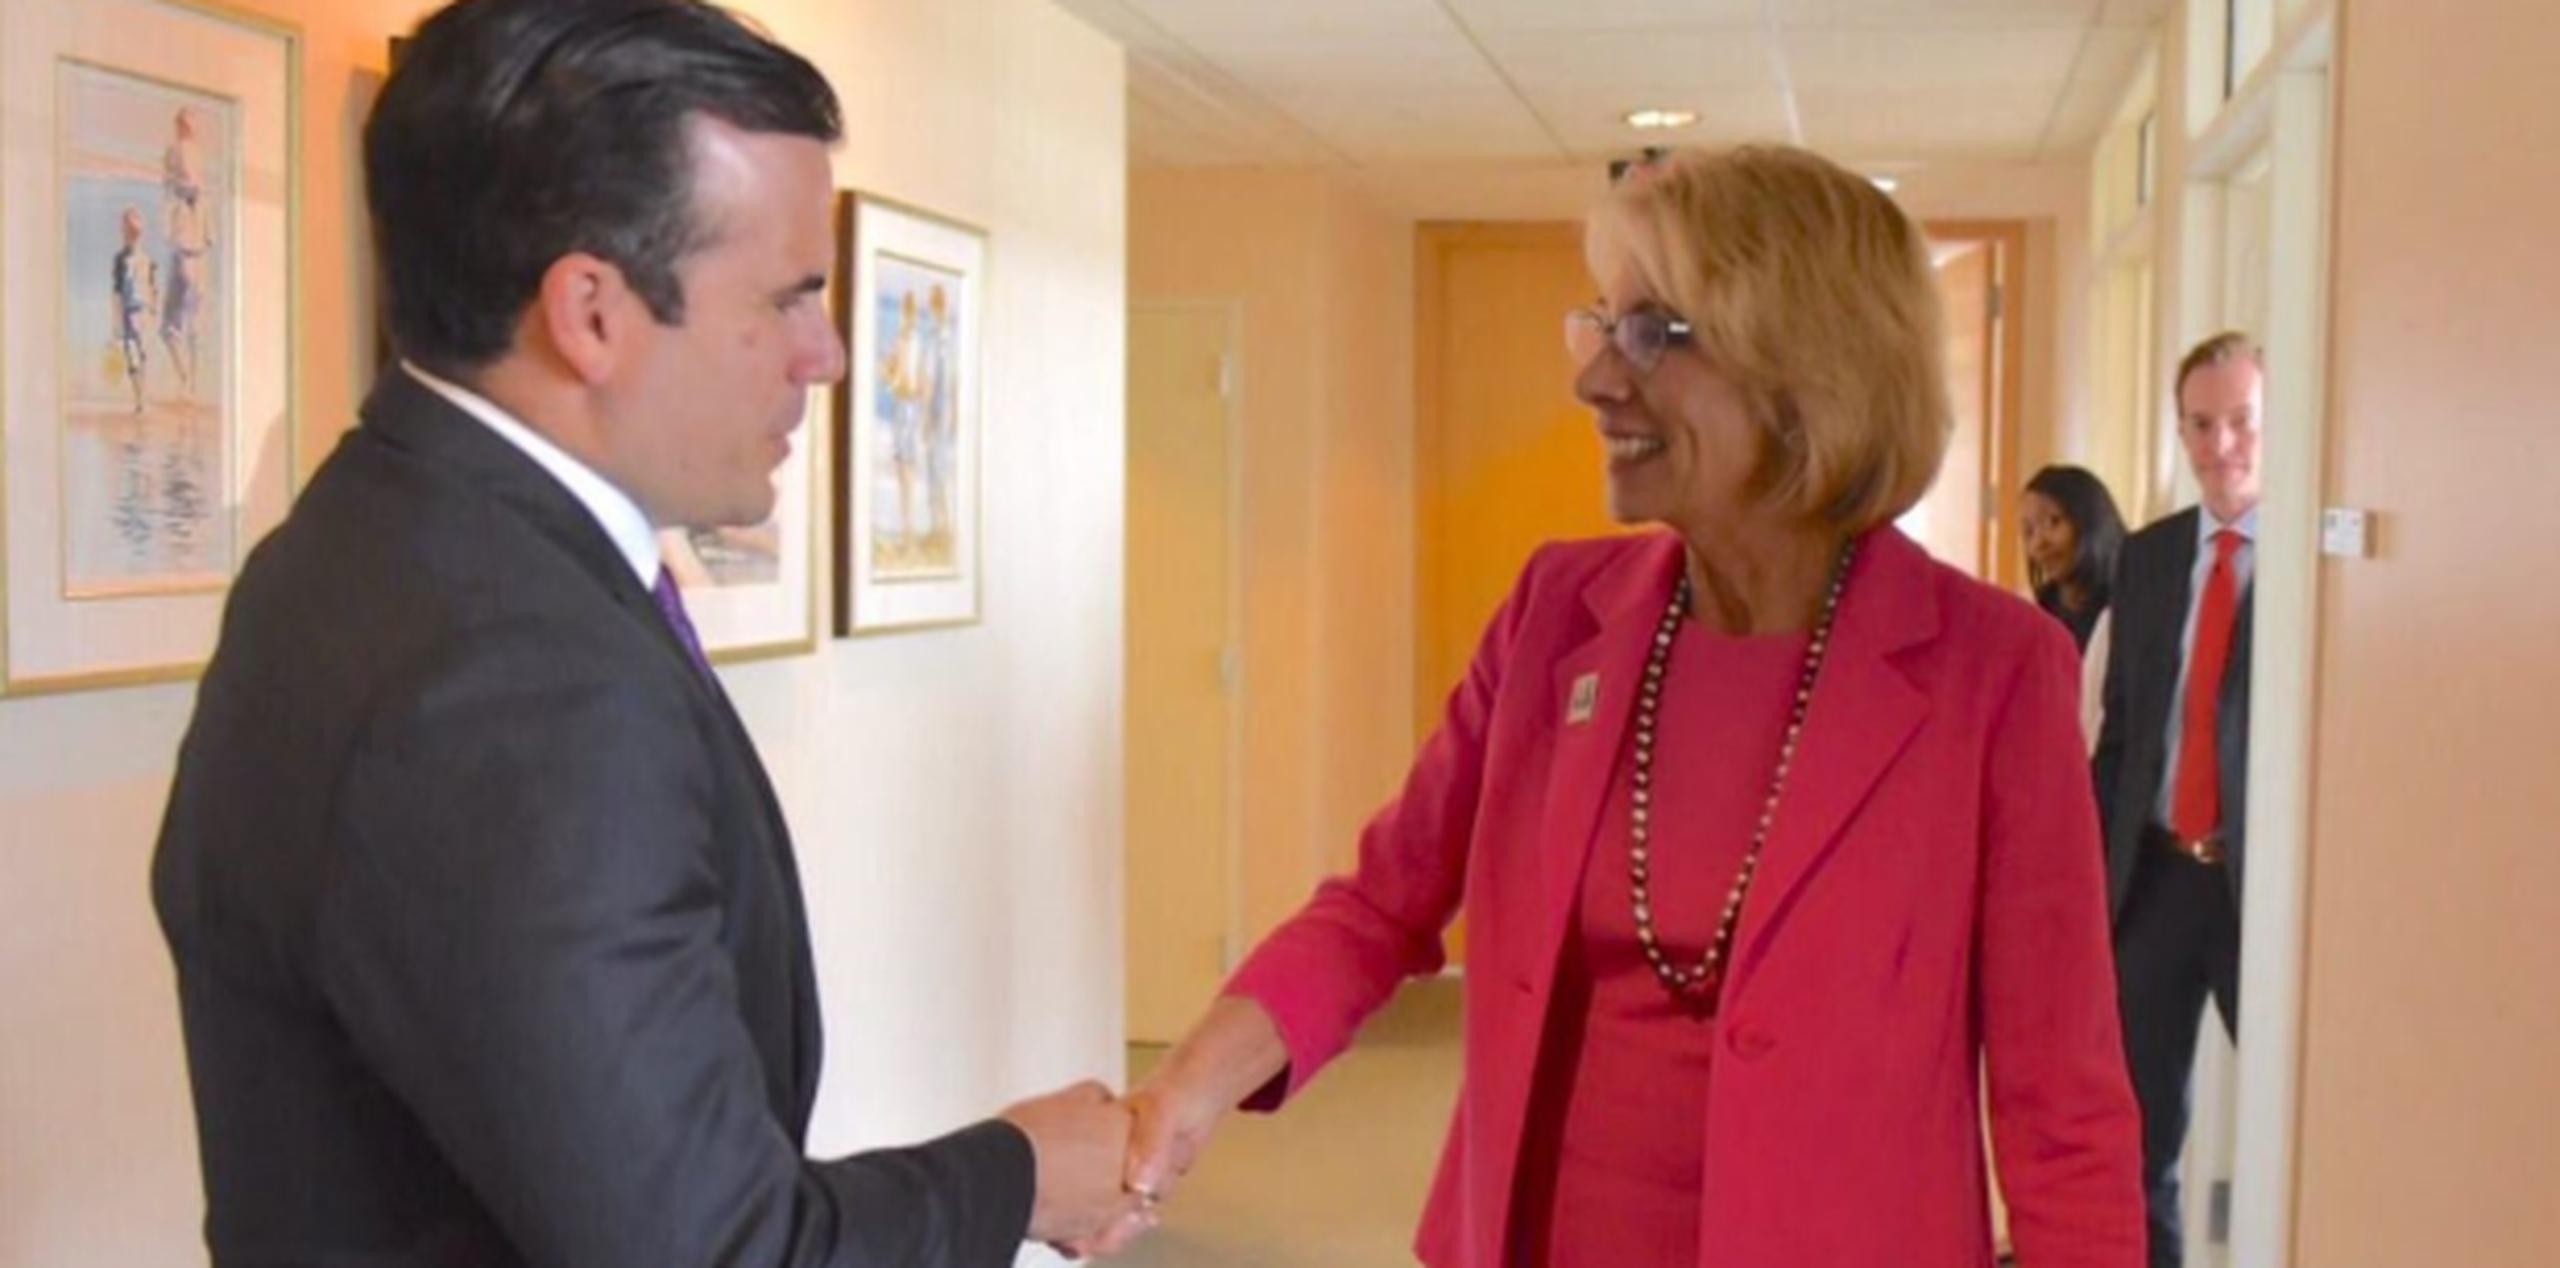 El gobernador Ricardo Rosselló mientras saludaba a la secretaria de Educación de los Estados Unidos, Betsy DeVos (Twitter / @ricardorossello)